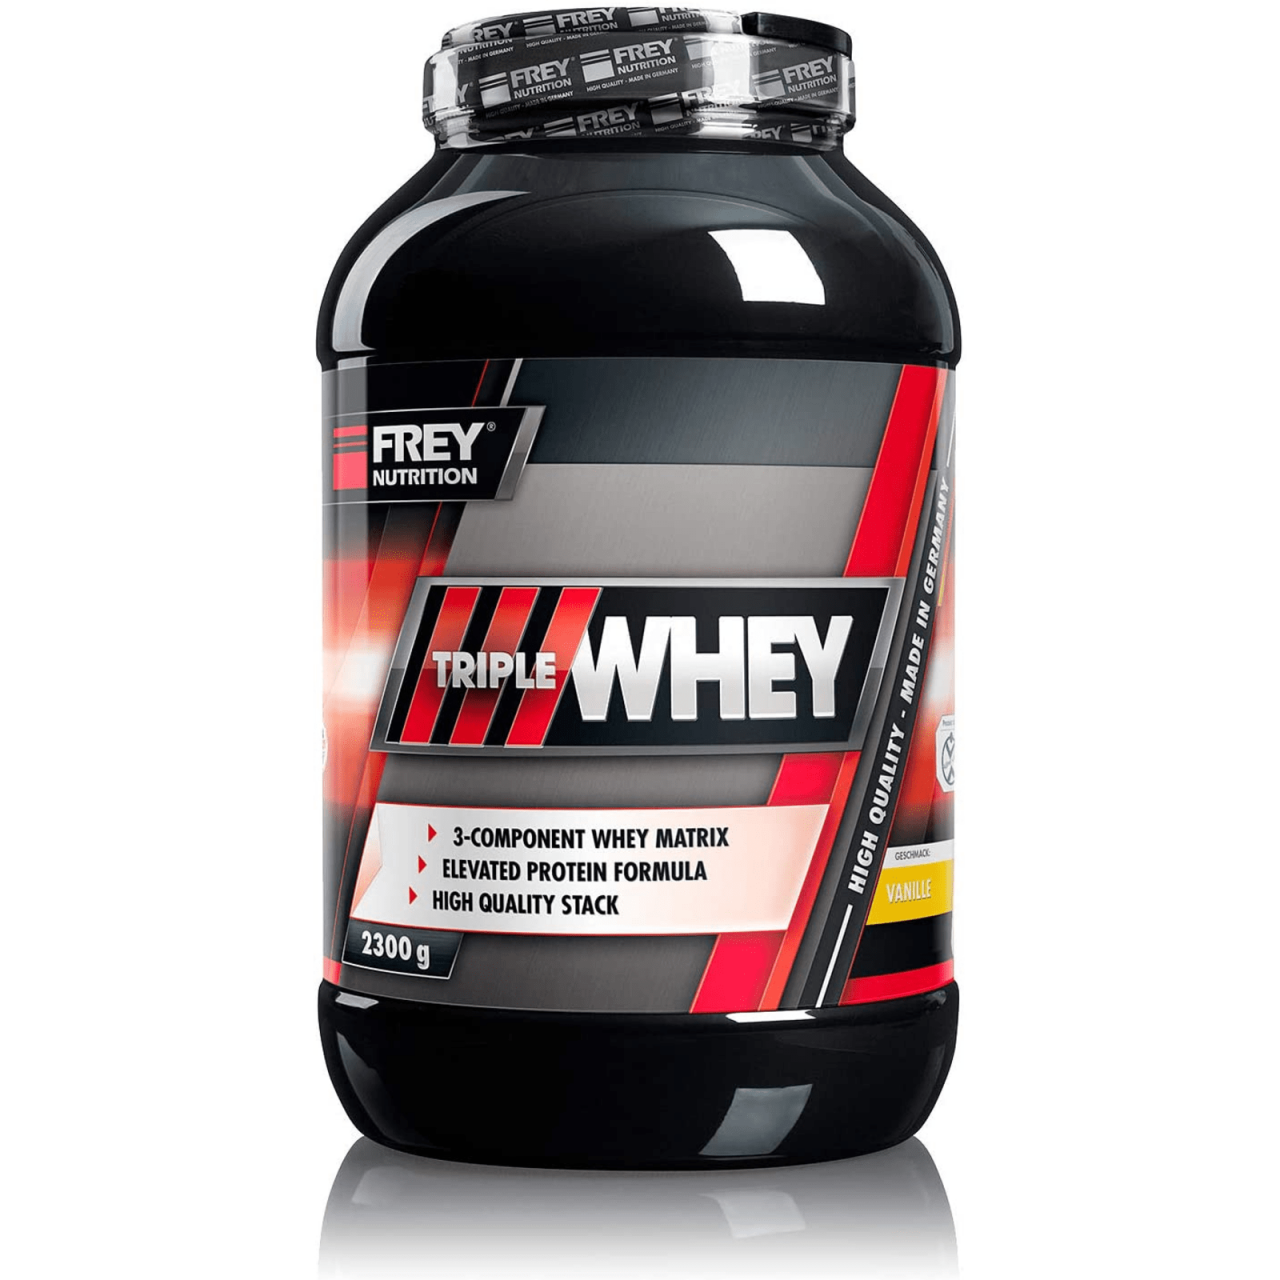 Frey Nutrition Whey Protein Vanille Dose, 1er Pack (1 x 2.3 kg) Whey-Protein - Trägt zur Muskelzunahme und zum Muskelerhalt bei - Hoher 30%iger Isolatanteil - Hoher BCAA-Anteil im Proteinrohstoff (23,8 g) - Made in Germany